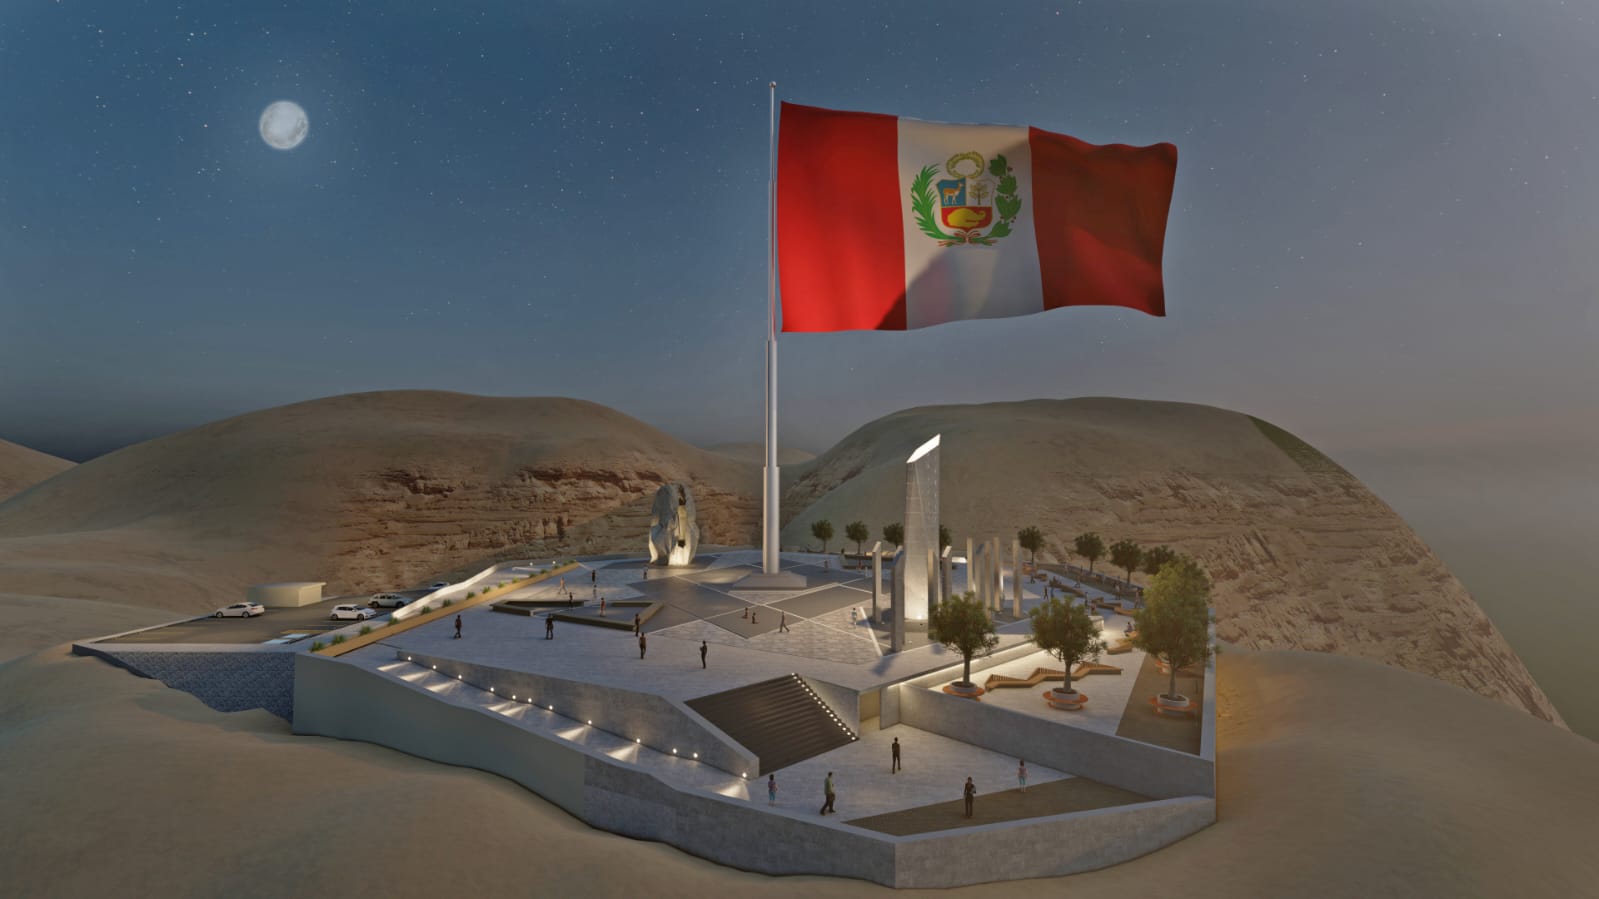 Tacna tendrá el mirador turístico con la bandera más grande del Perú: descubre el impresionante proyecto